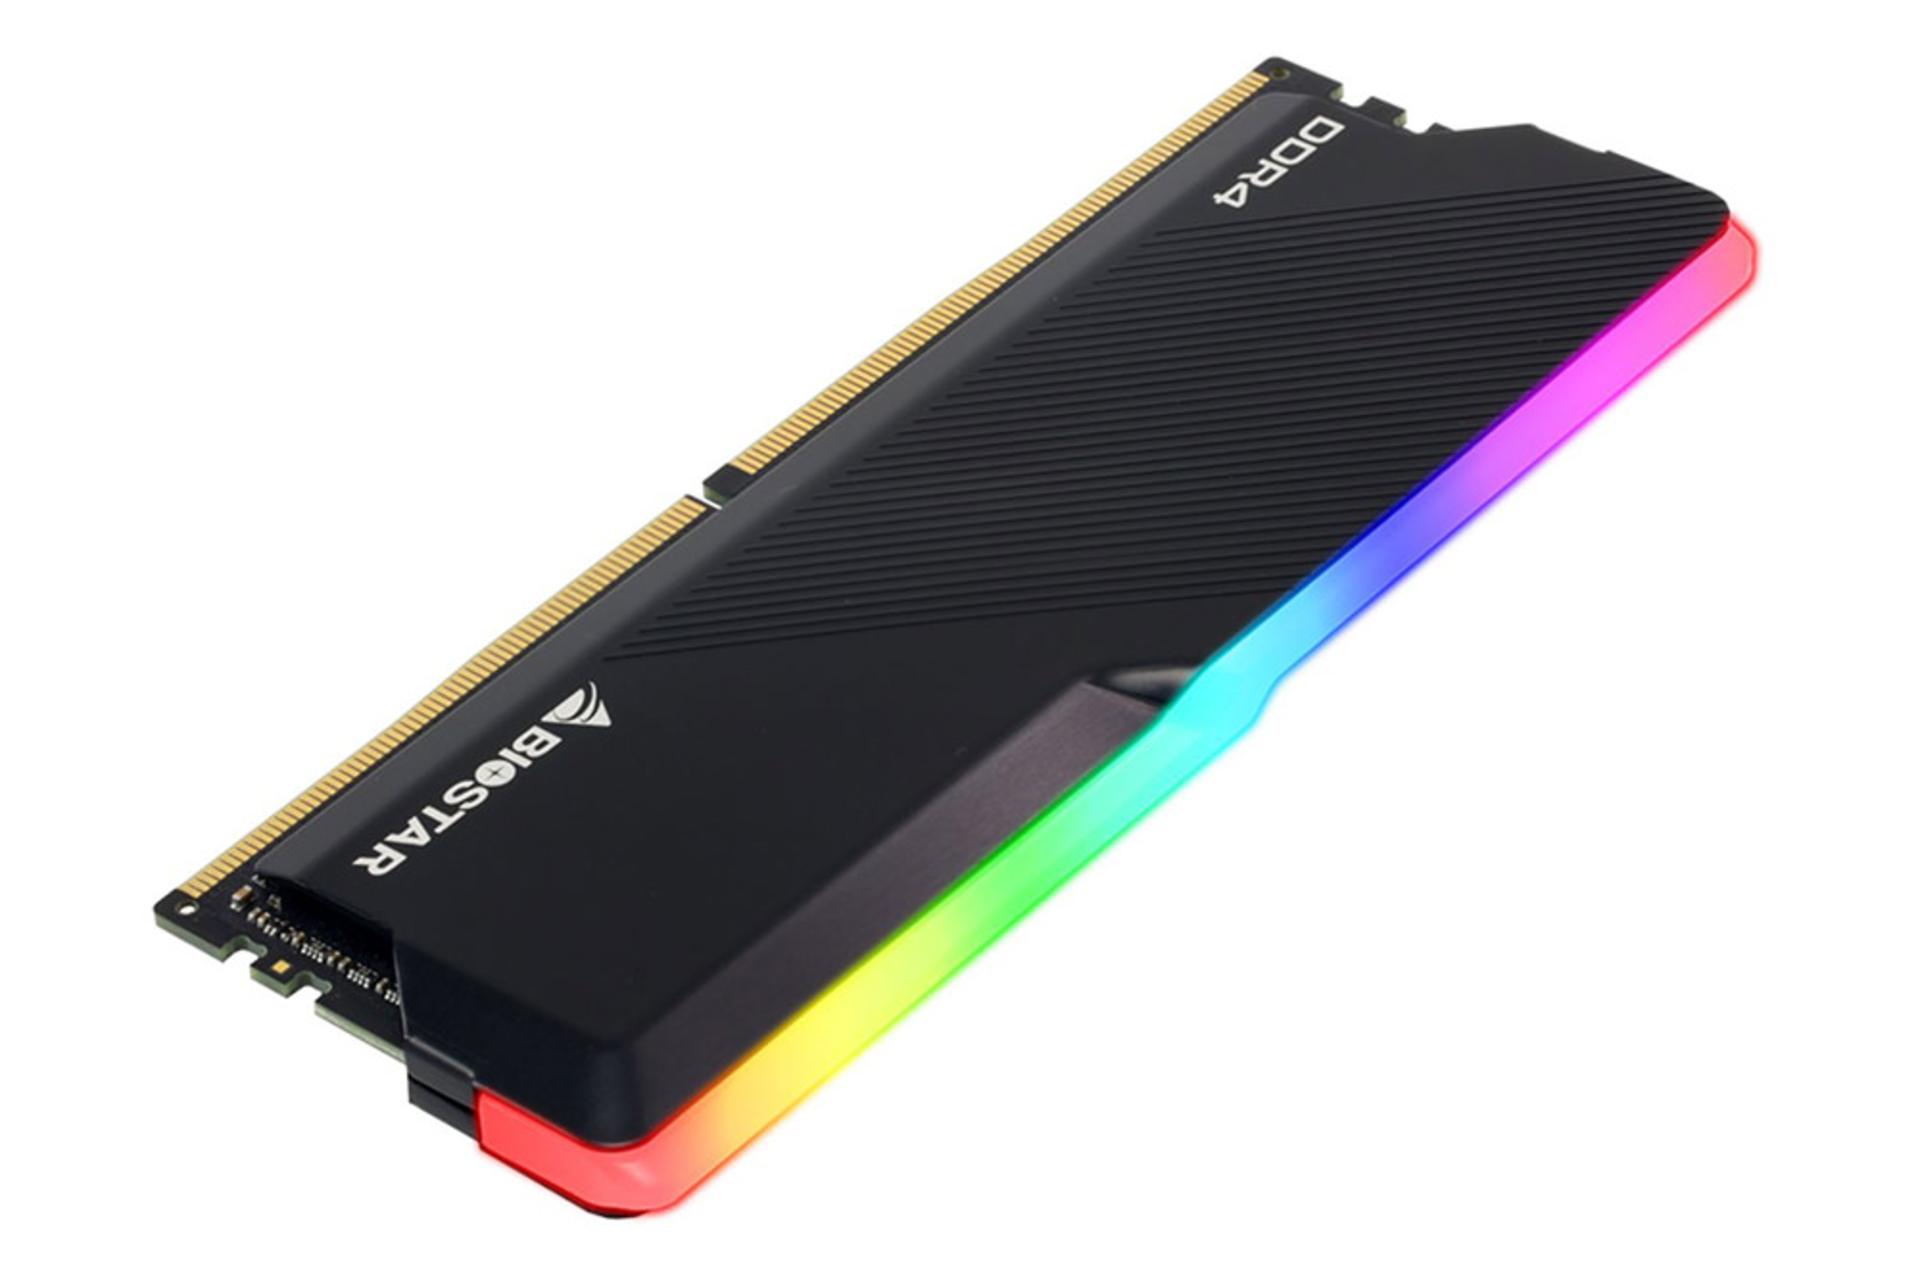  رم بایواستار GAMING X ظرفیت 16 گیگابایت (2x8) از نوع DDR4-3200 نمای جانبی بالا